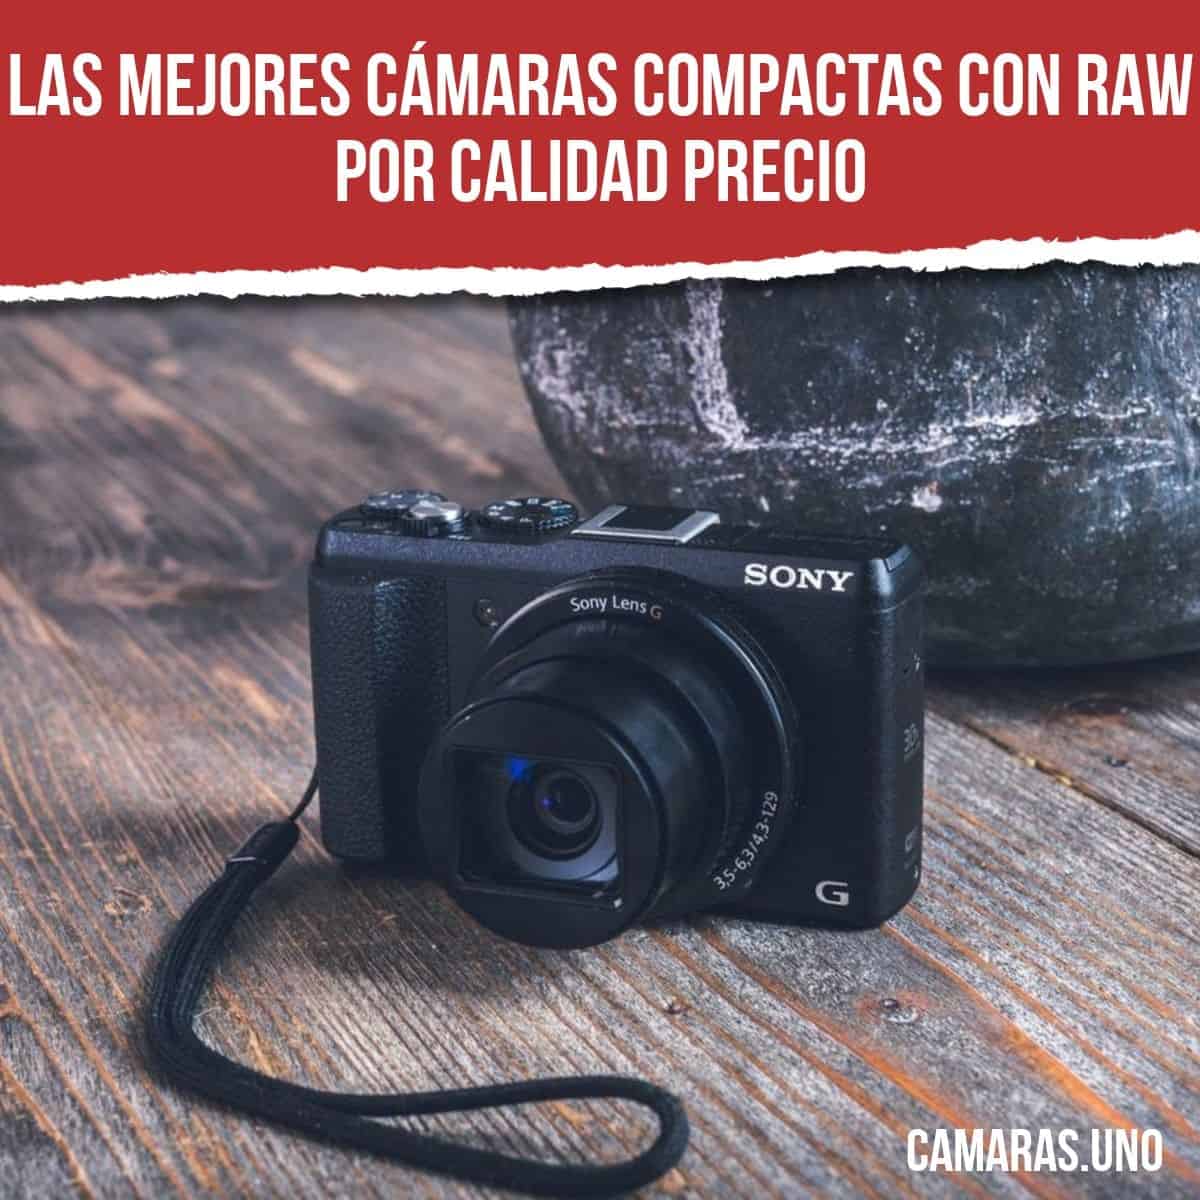 Las mejores cámaras compactas con RAW por calidad precio